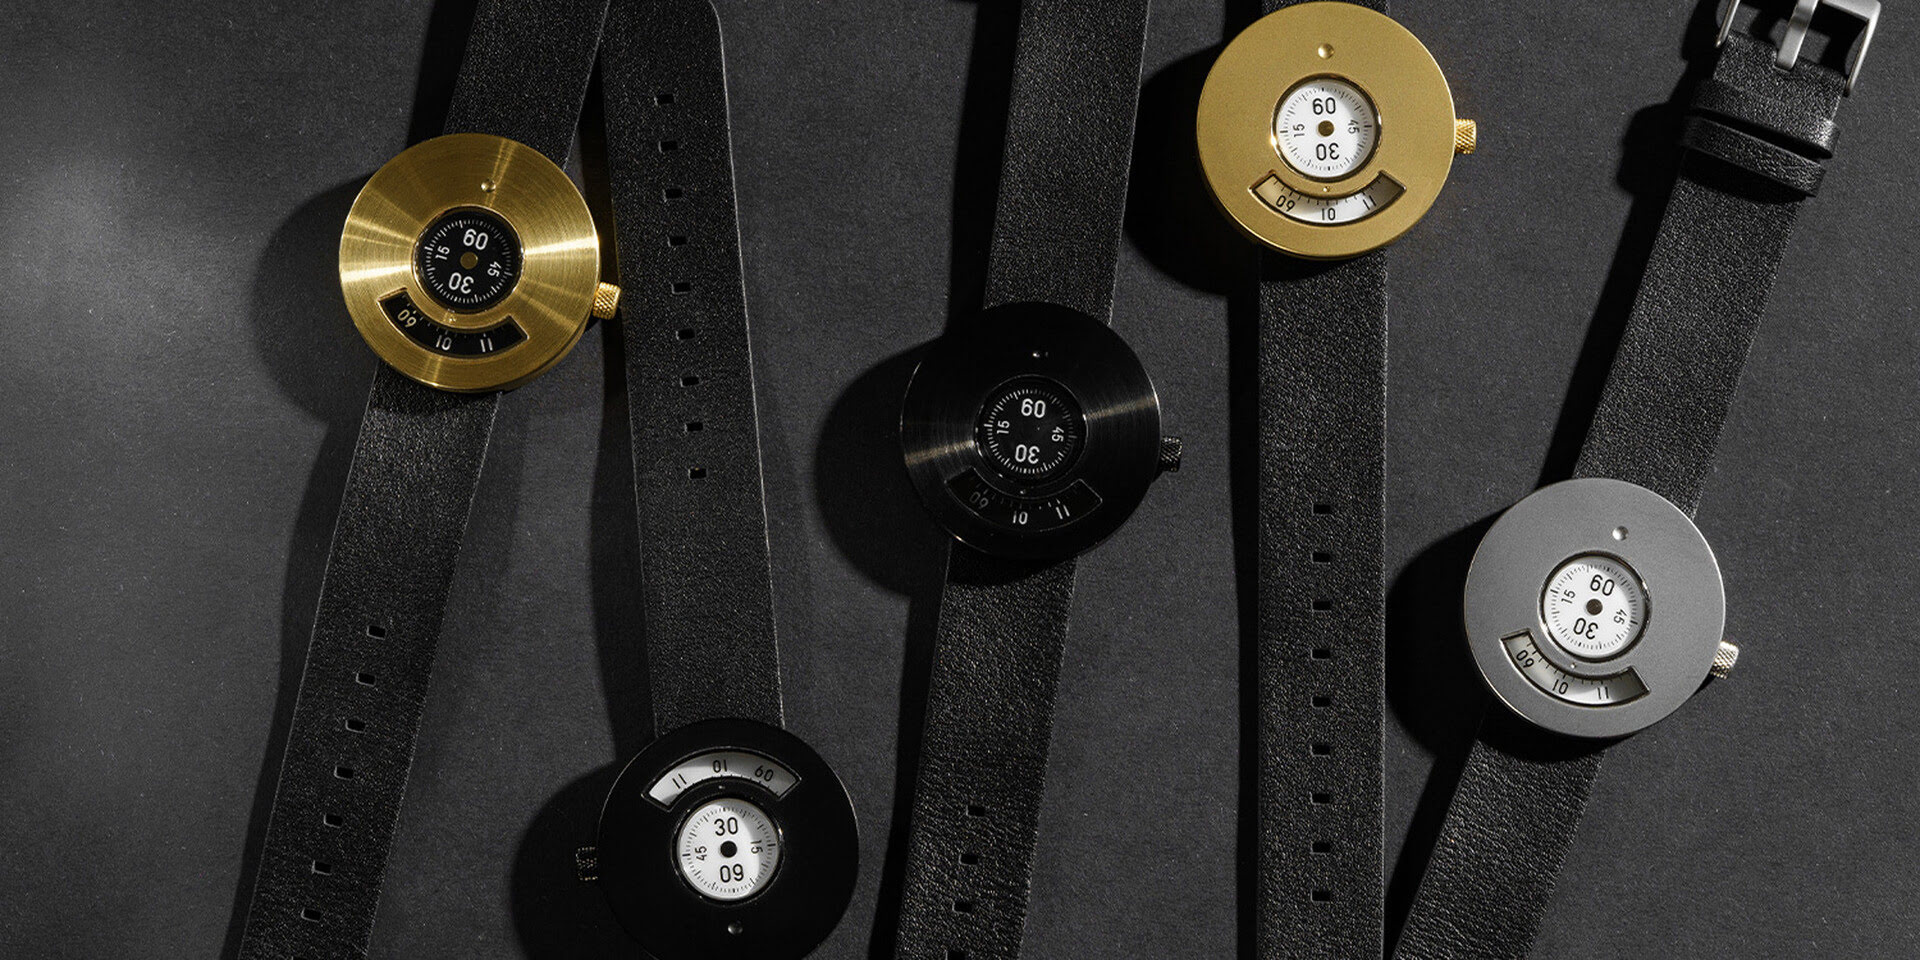 Аксесуар сезону: унікальний годинник з двома дисками замість стрілок українського бренду ZAVOD-Фото 1